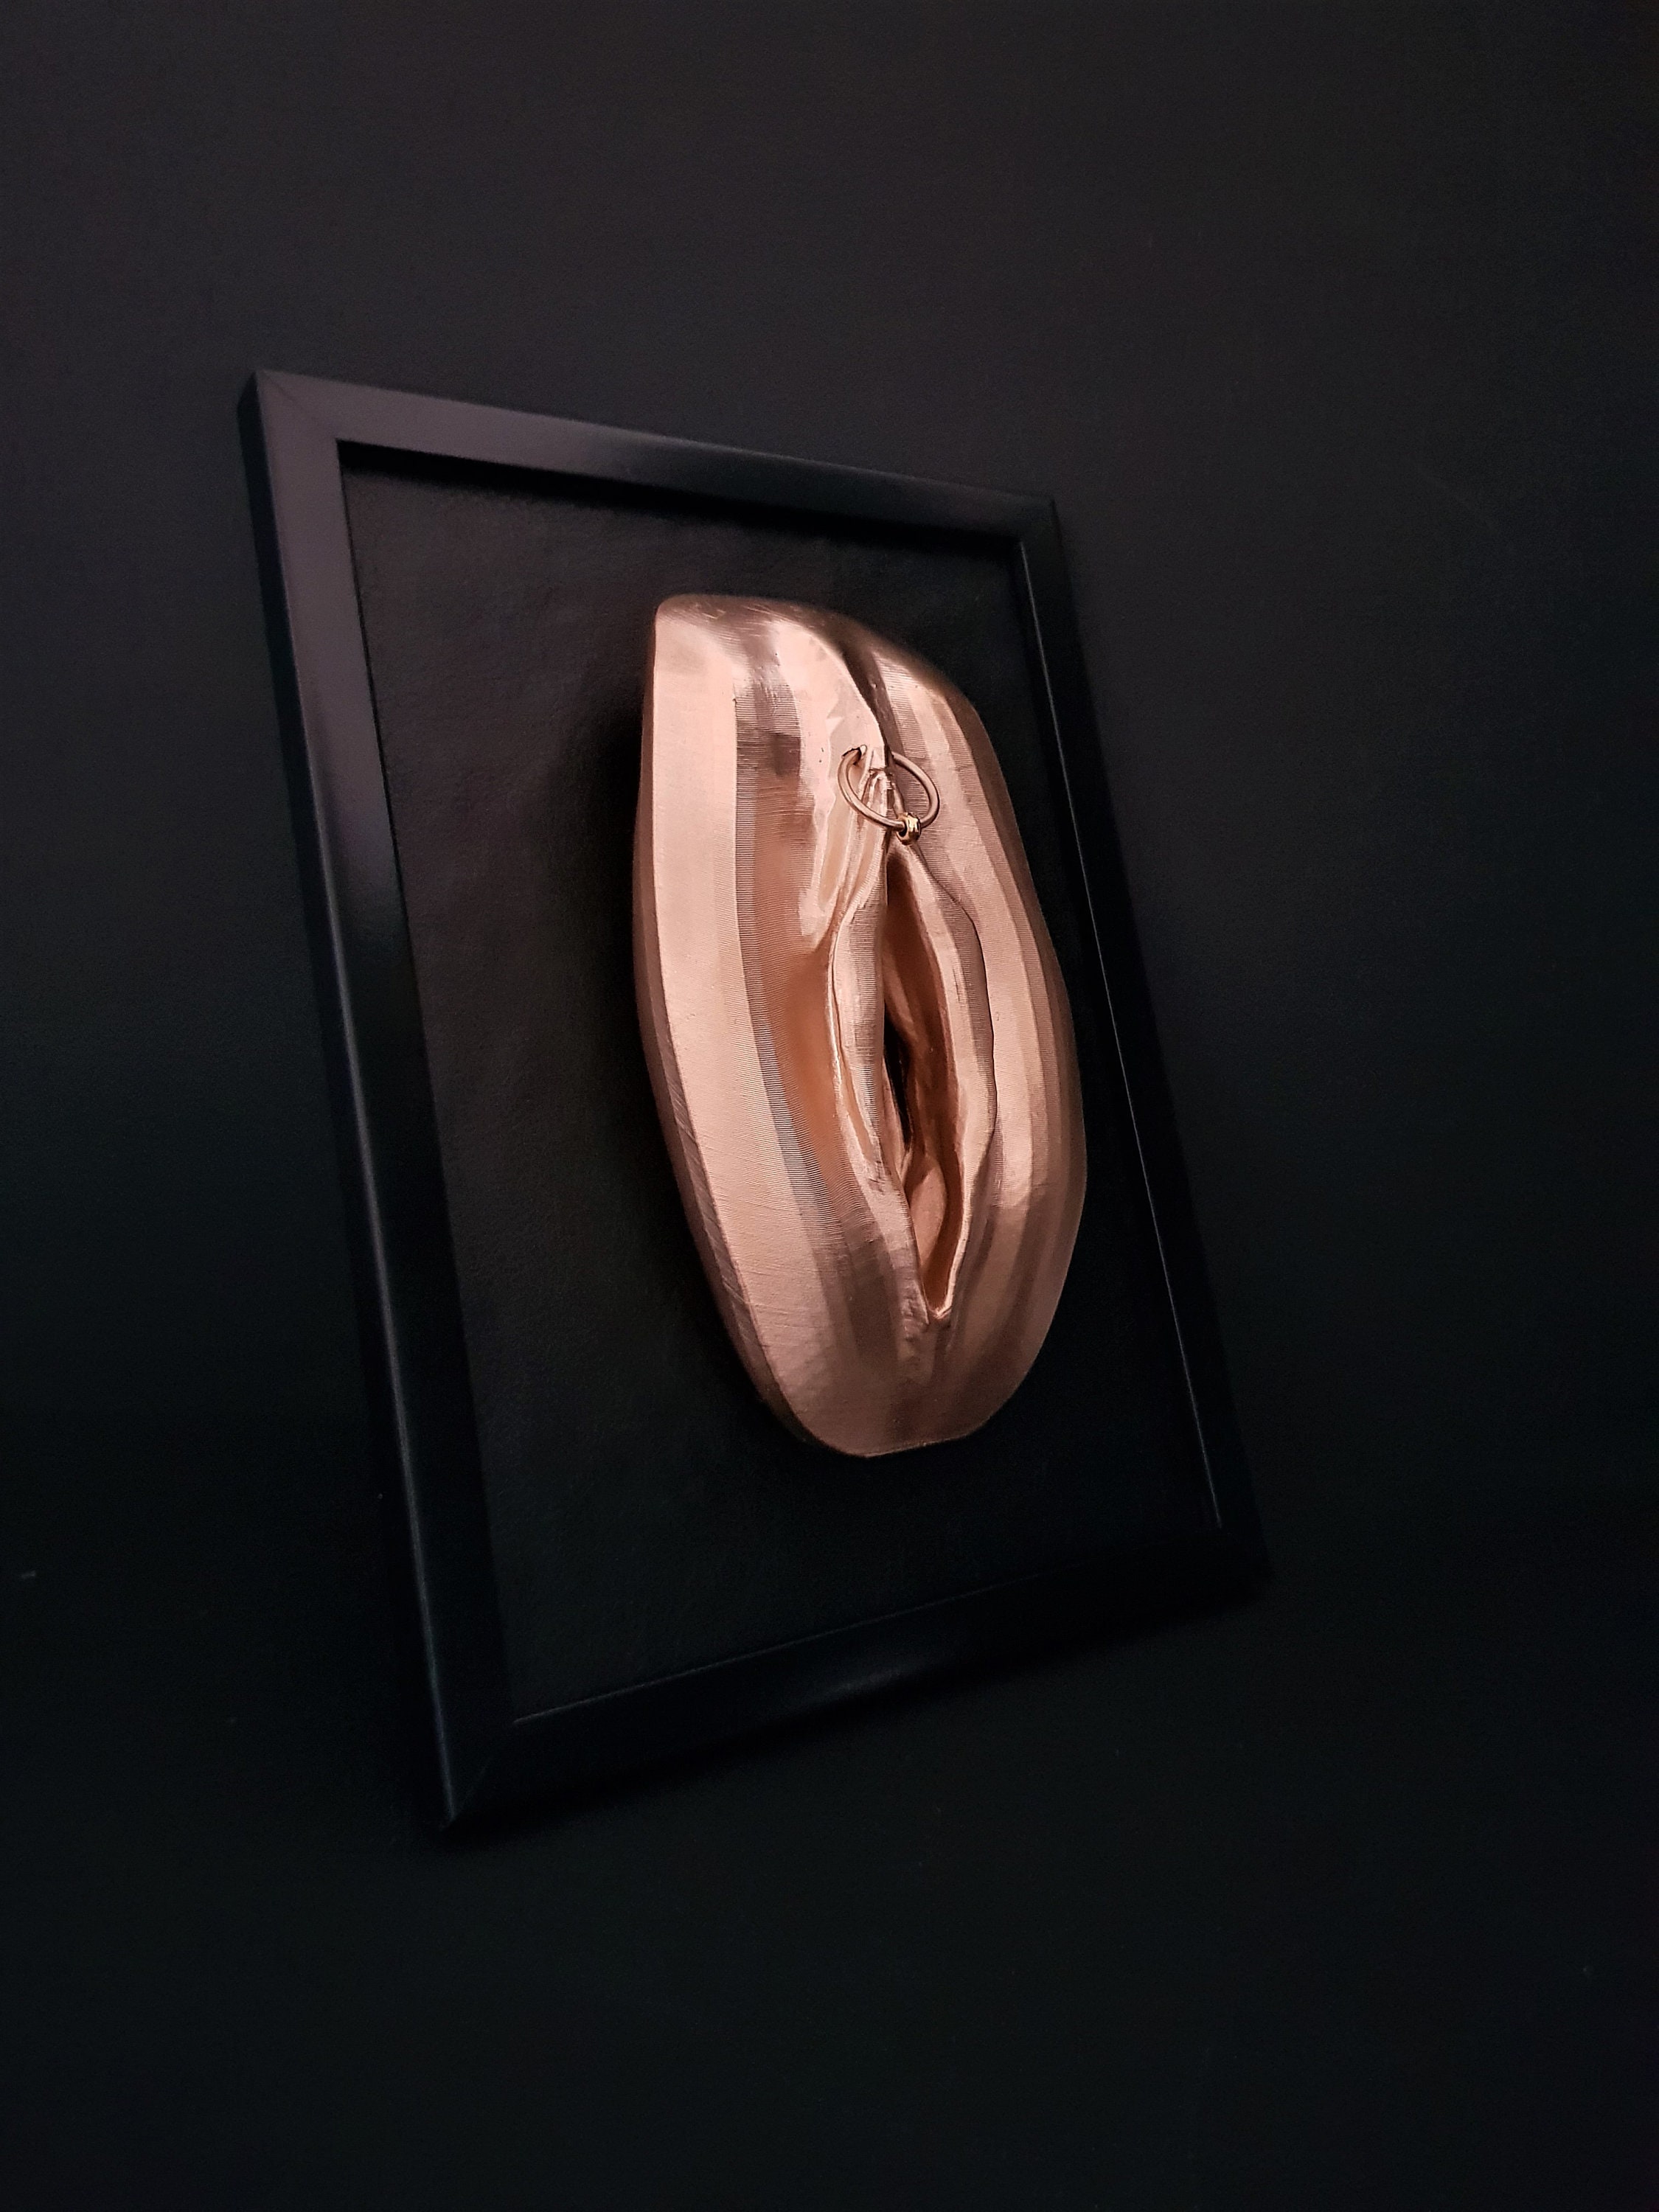 Doorboorde Vagina 3D Art Sculpture Erotische Vulva Wall Art